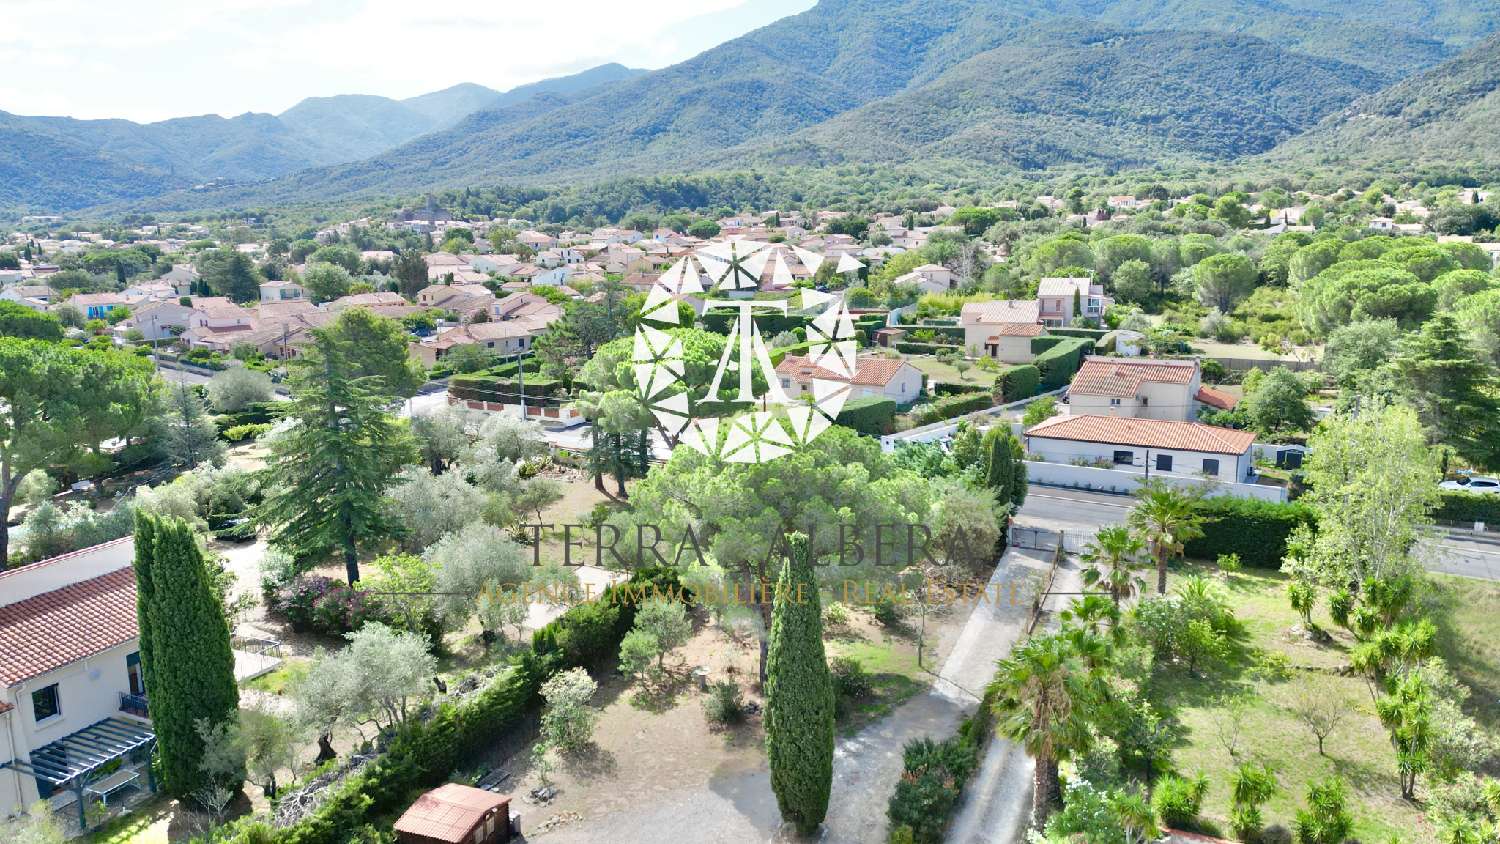  à vendre terrain Laroque-des-Albères Pyrénées-Orientales 2